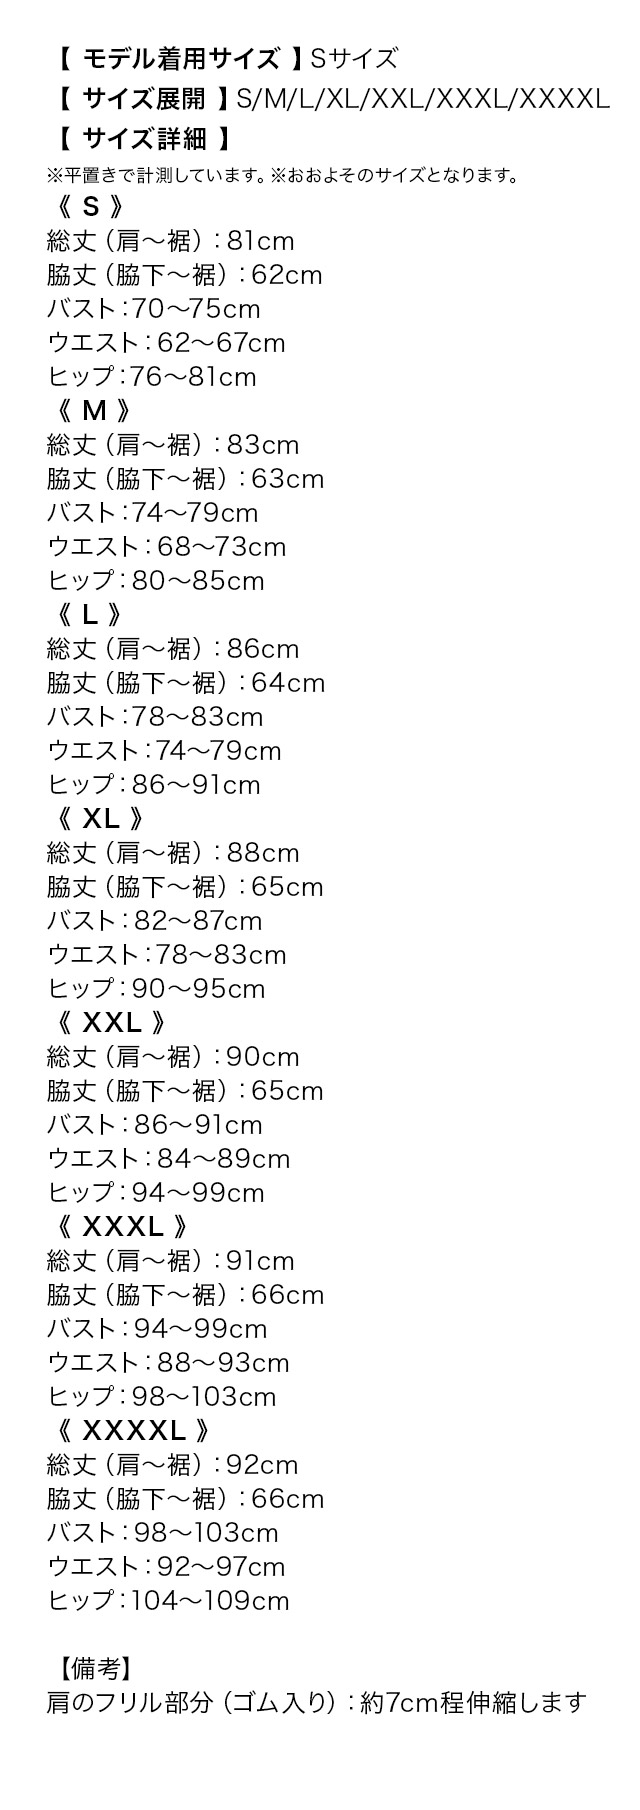 ノースリーブフリル袖ワンカラーストレッチタイトミニドレスのサイズ表